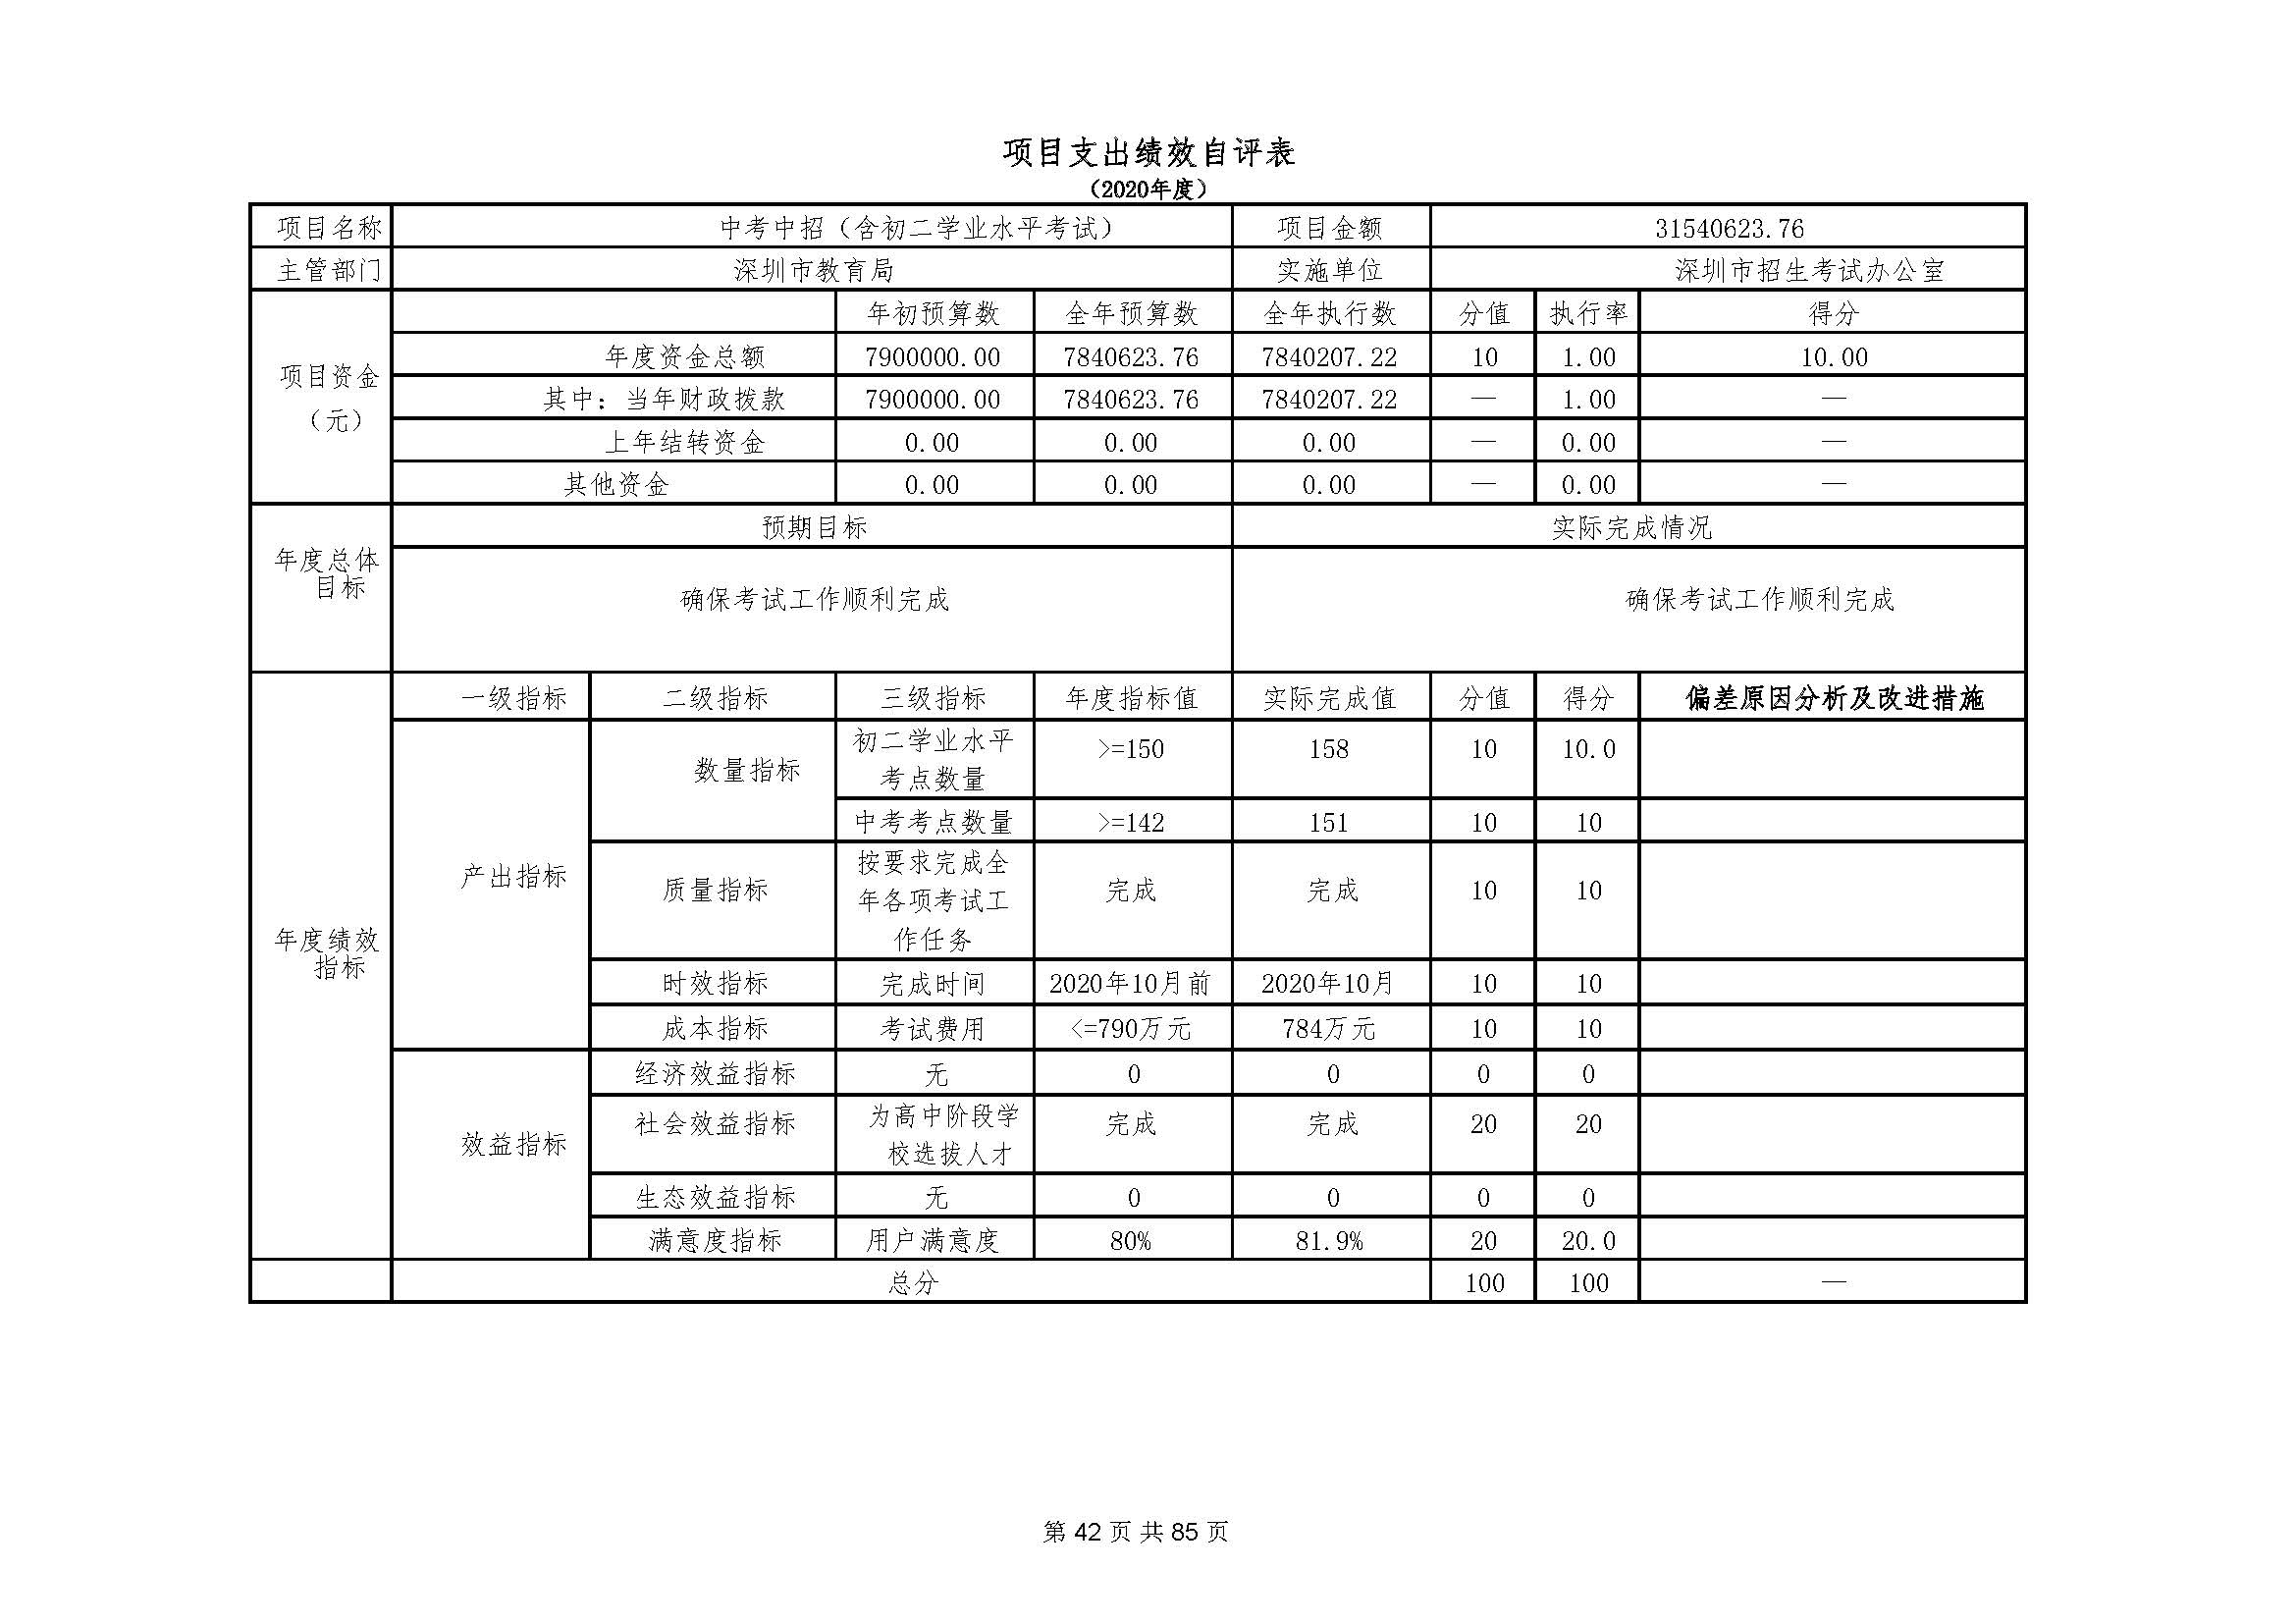 深圳市招生考试办公室2020年度部门决算_页面_43.jpg